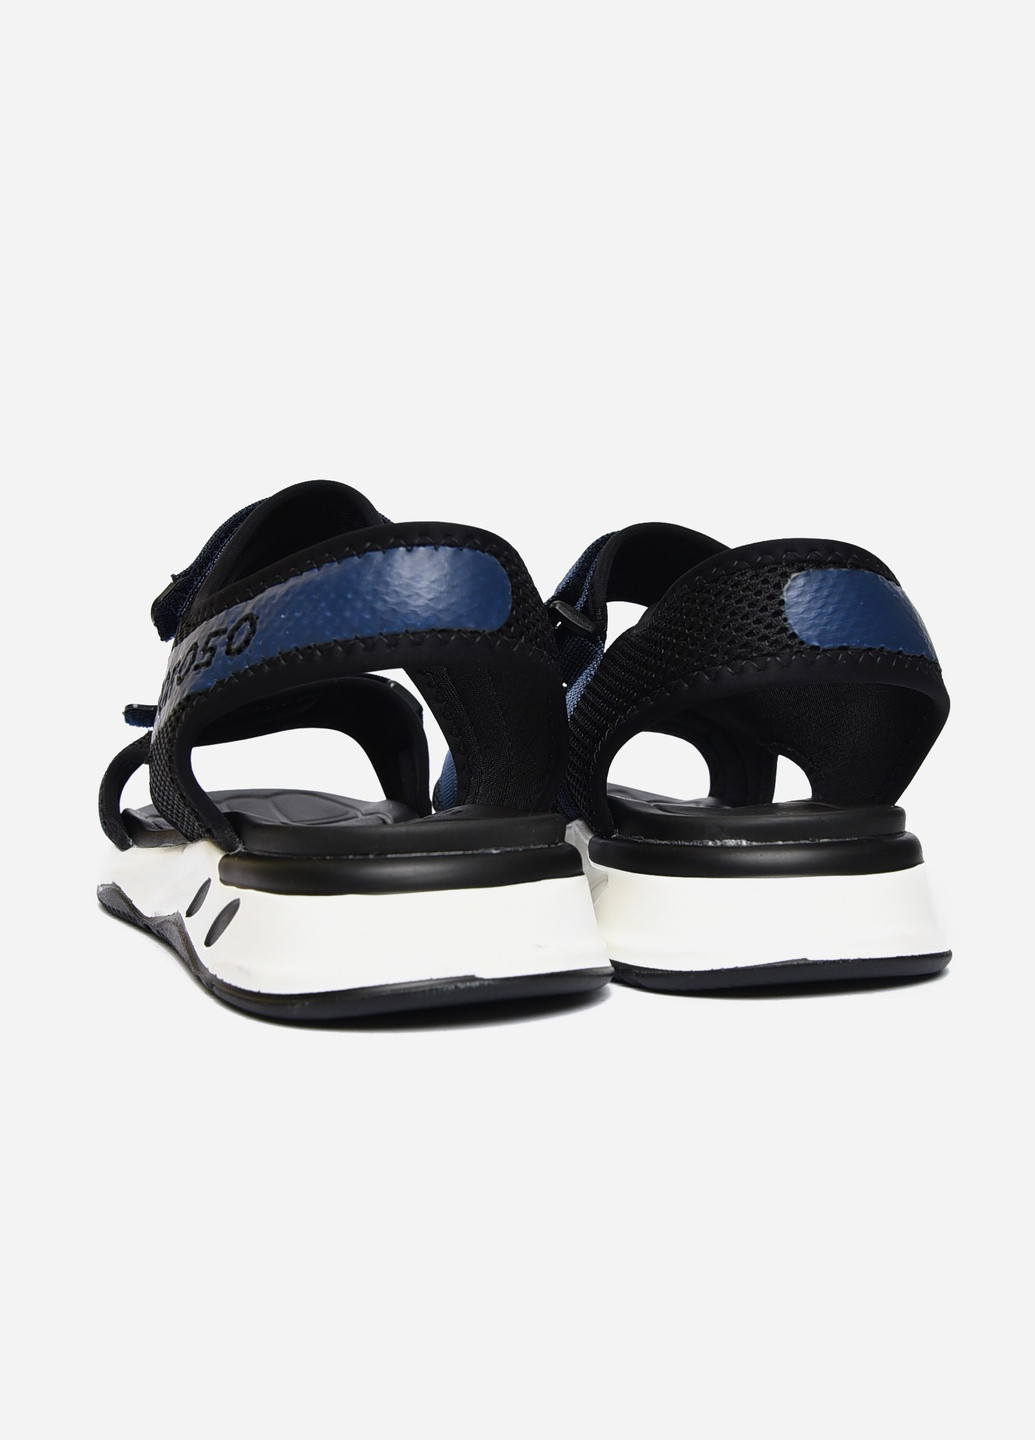 Пляжные сандалии мужские чорно-синего цвета текстиль Let's Shop